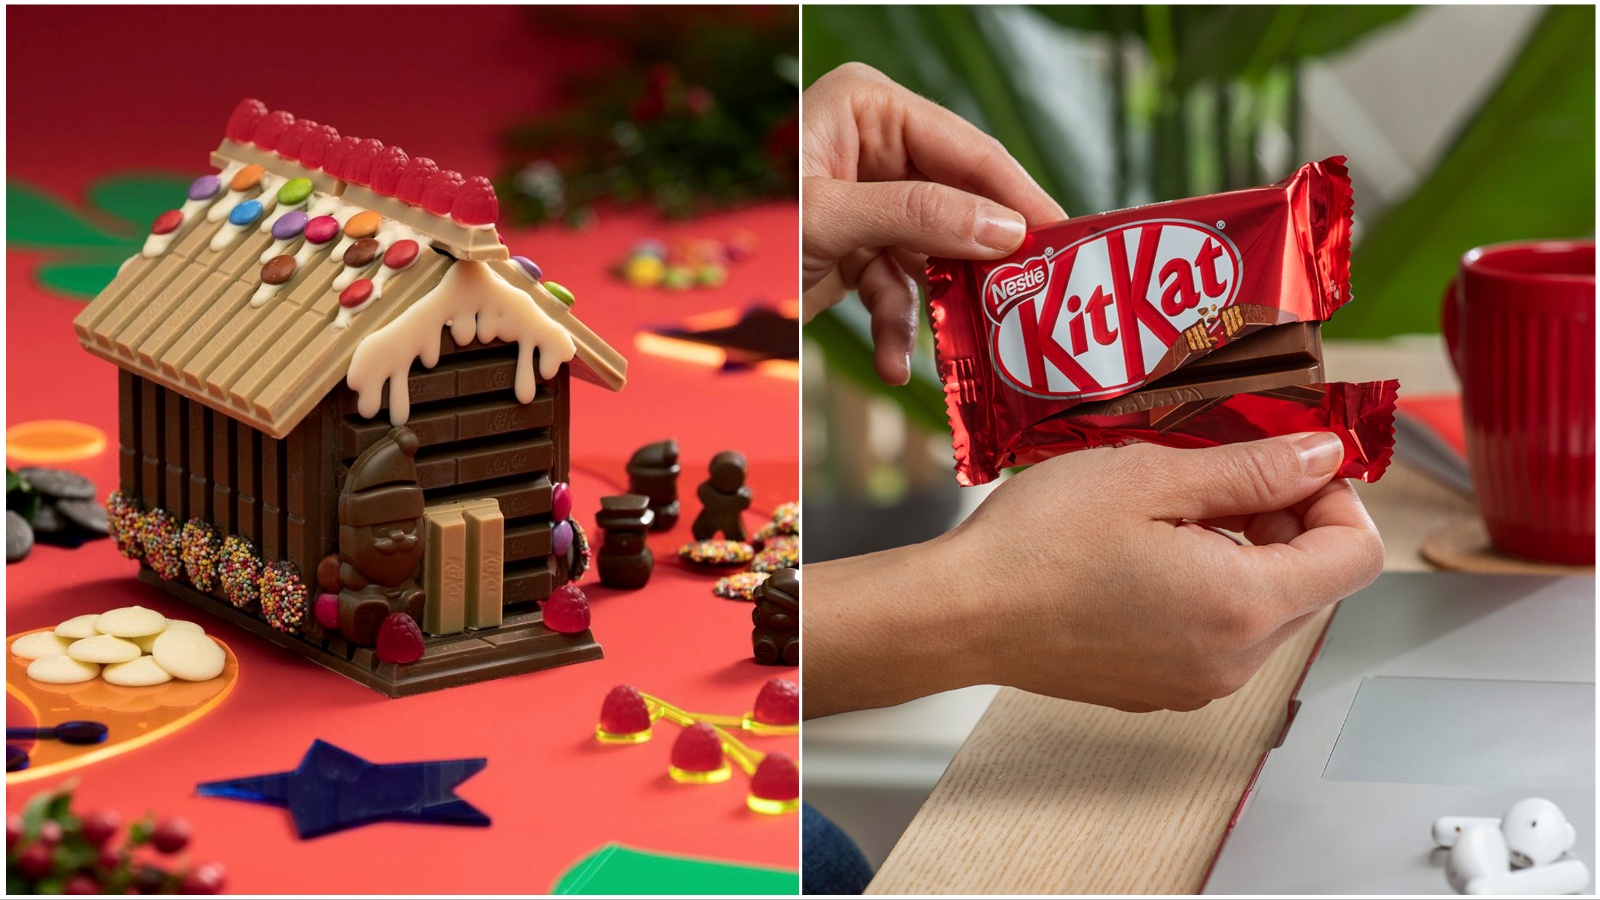 Umjesto gingerbread kućice, za blagdane izrađujemo KitKat božićnu kolibu